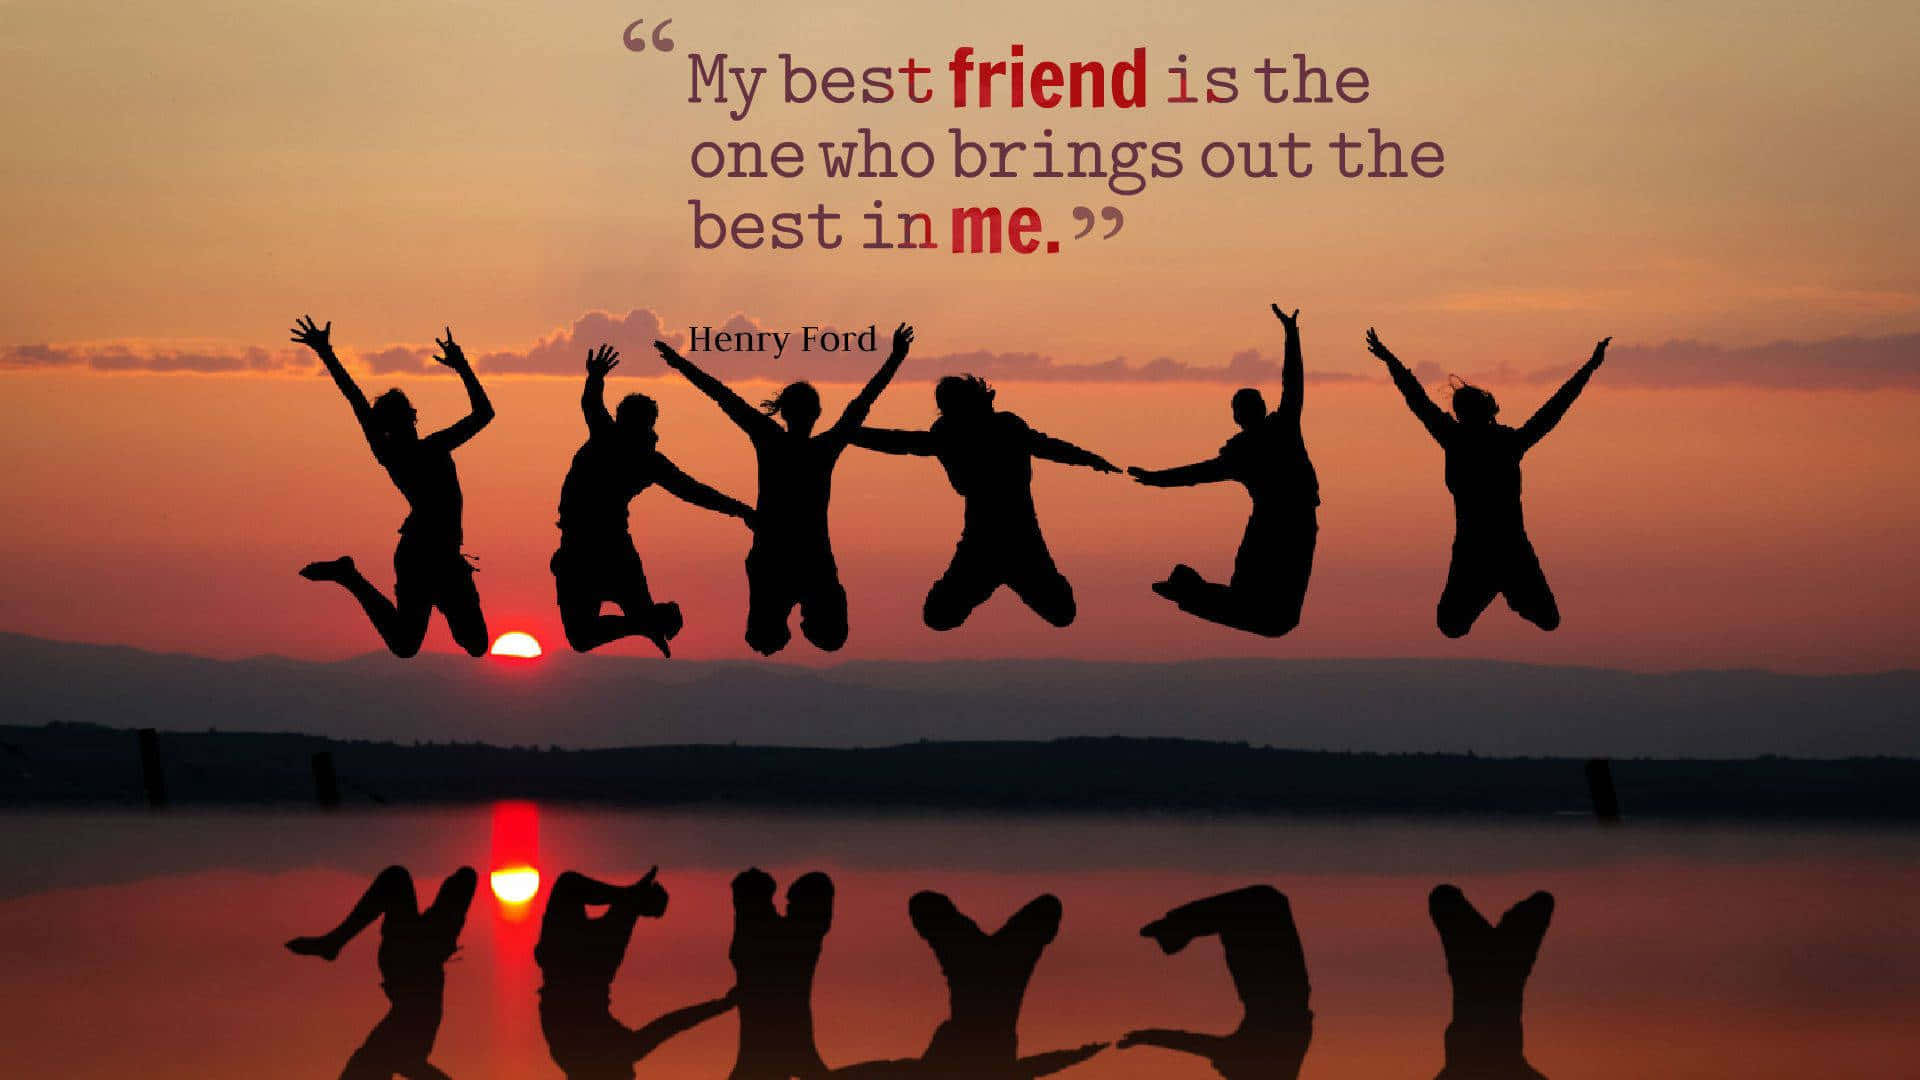 6 best friends quotes